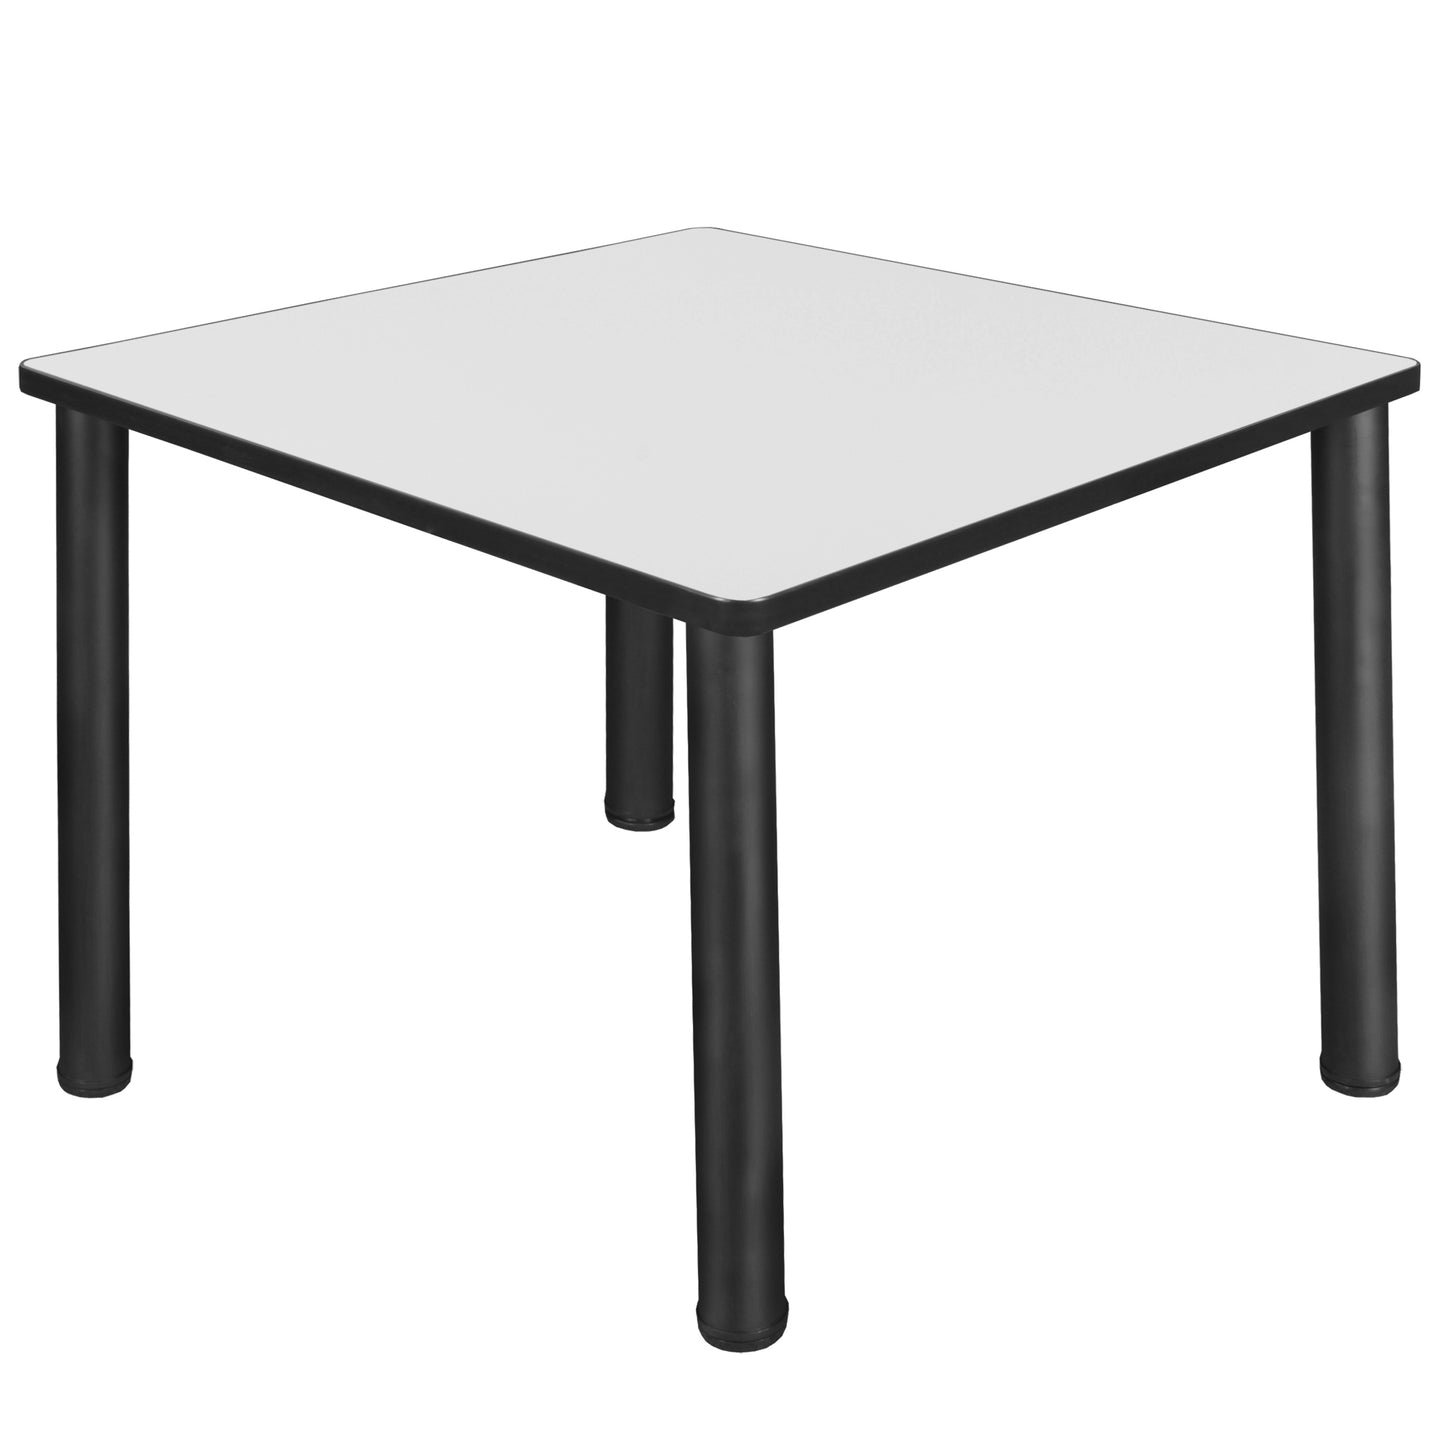 Regency Kee 36 in. Medium Square Breakroom Table- Ash Grey Top, Black Legs